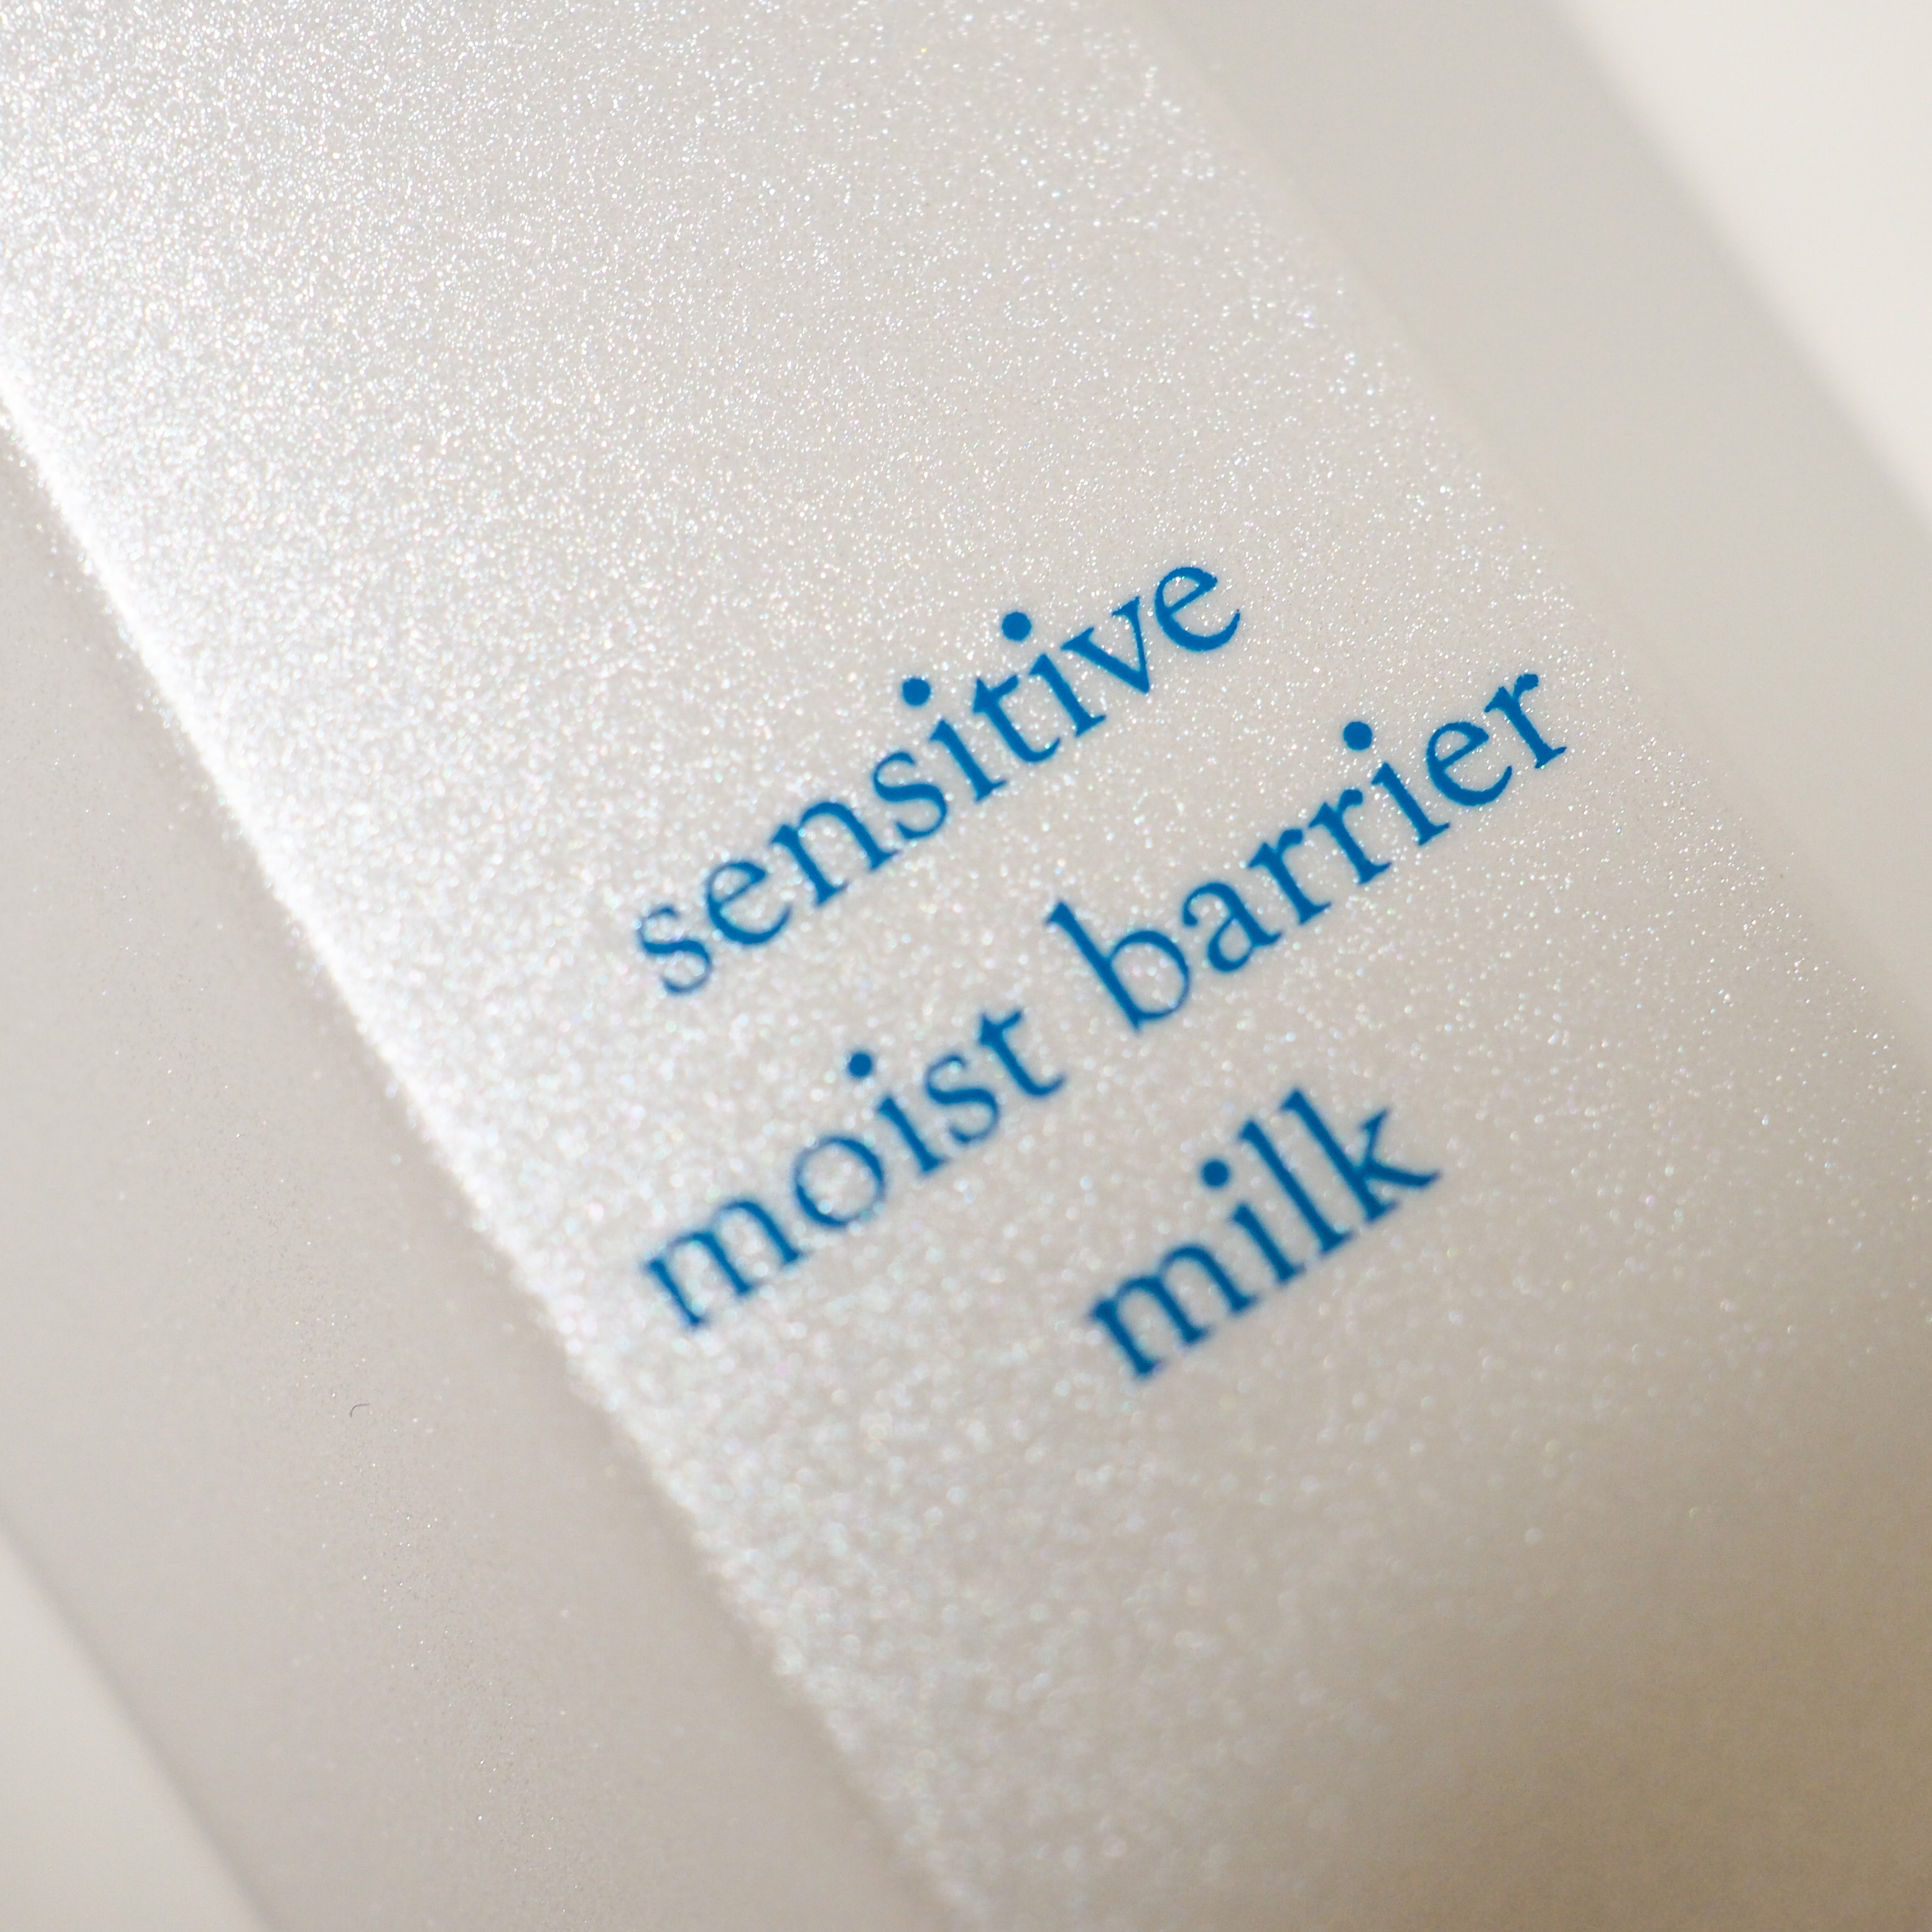 iniks(イニクス) センシティブ モイストバリア ミルクの良い点・メリットに関するaquaさんの口コミ画像2